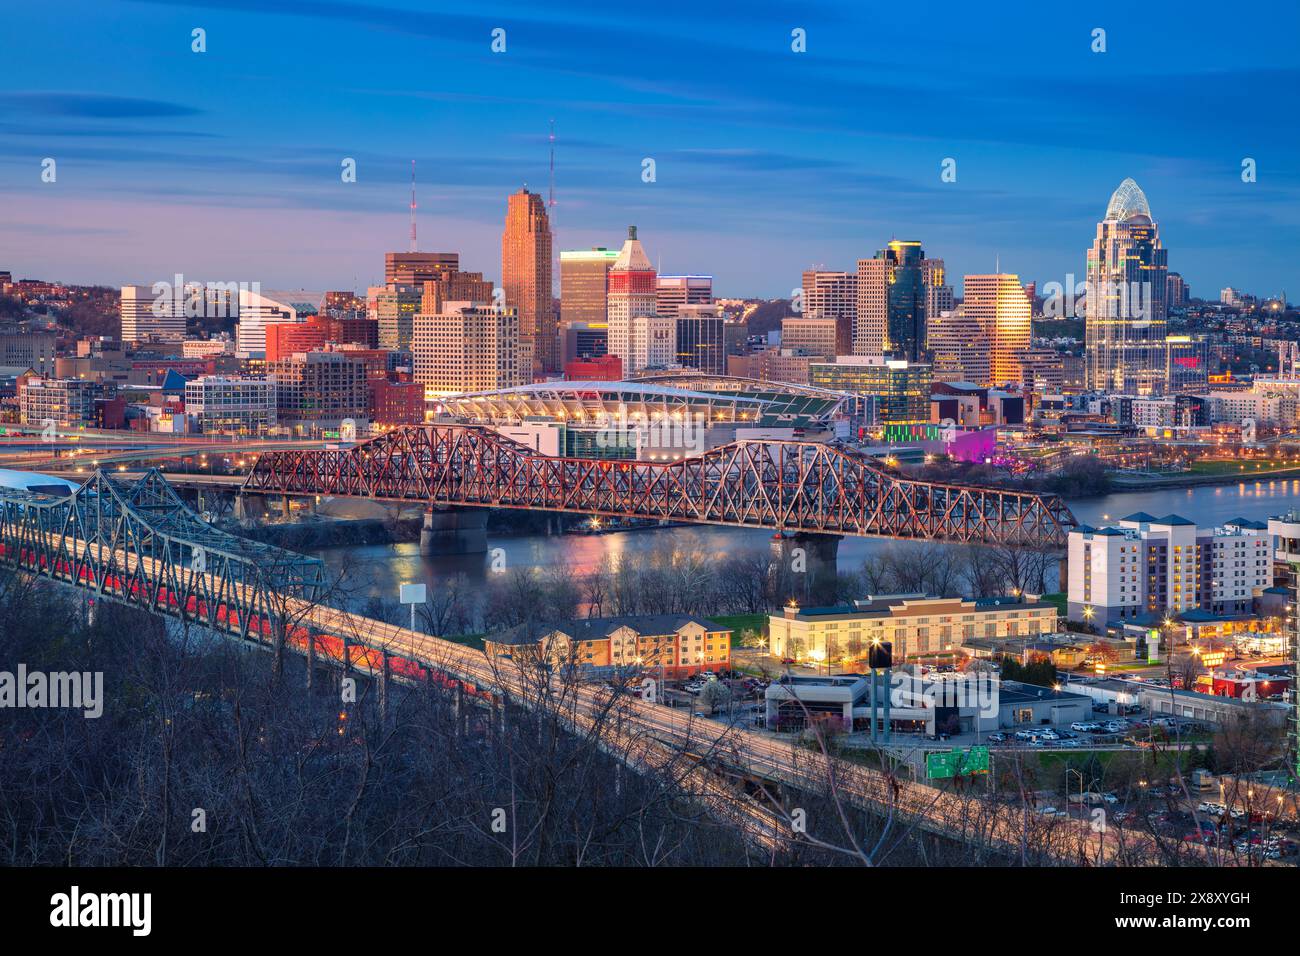 Cincinnati, Ohio, Stati Uniti. Immagine aerea della città di Cincinnati, Ohio, skyline del centro degli Stati Uniti con ponti e fiume Ohio al tramonto primaverile. Foto Stock